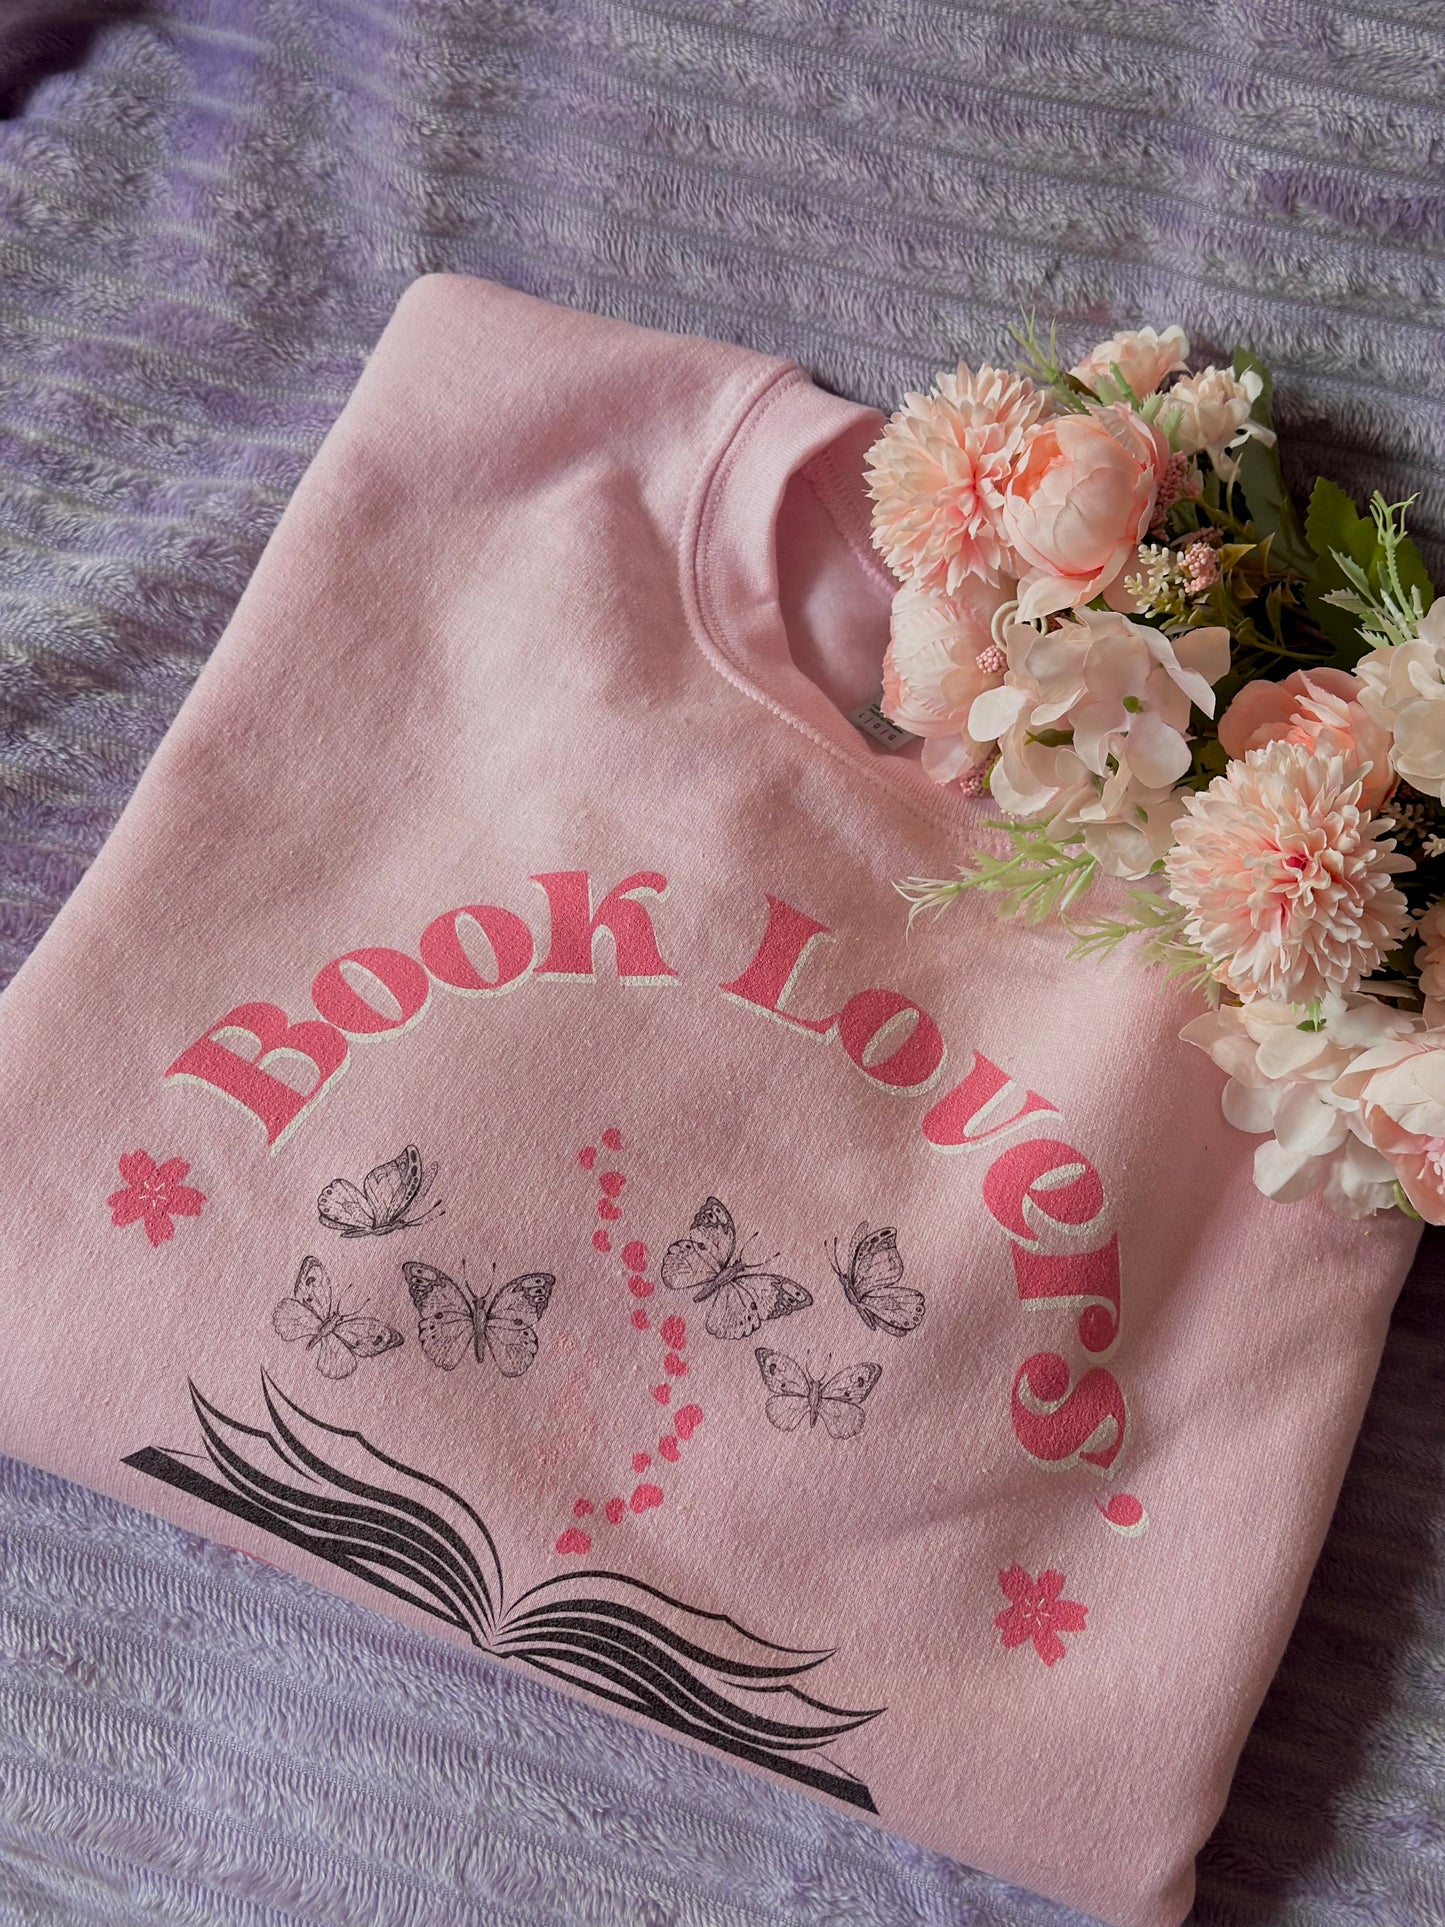 Book Lovers Club Baby Pink Sweatshirt